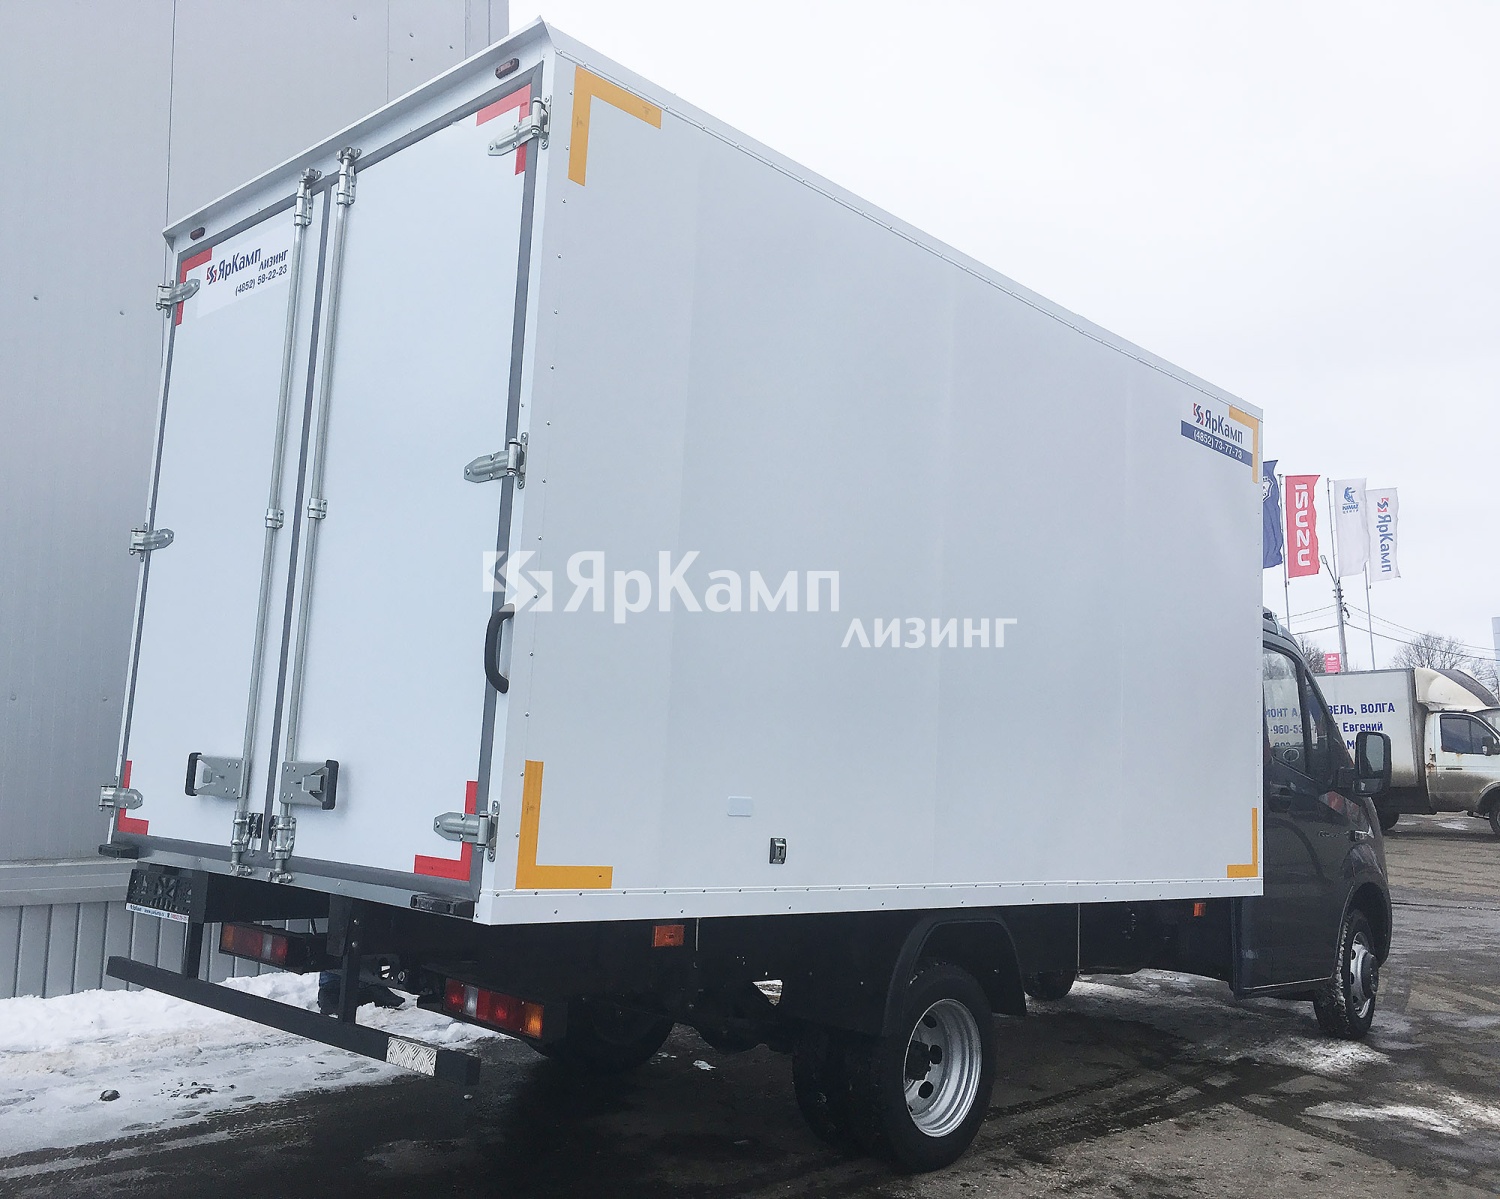 "ЯрКамп-Лизинг" передал в лизинг промтоварный фургон на базе ГАЗель NEXT